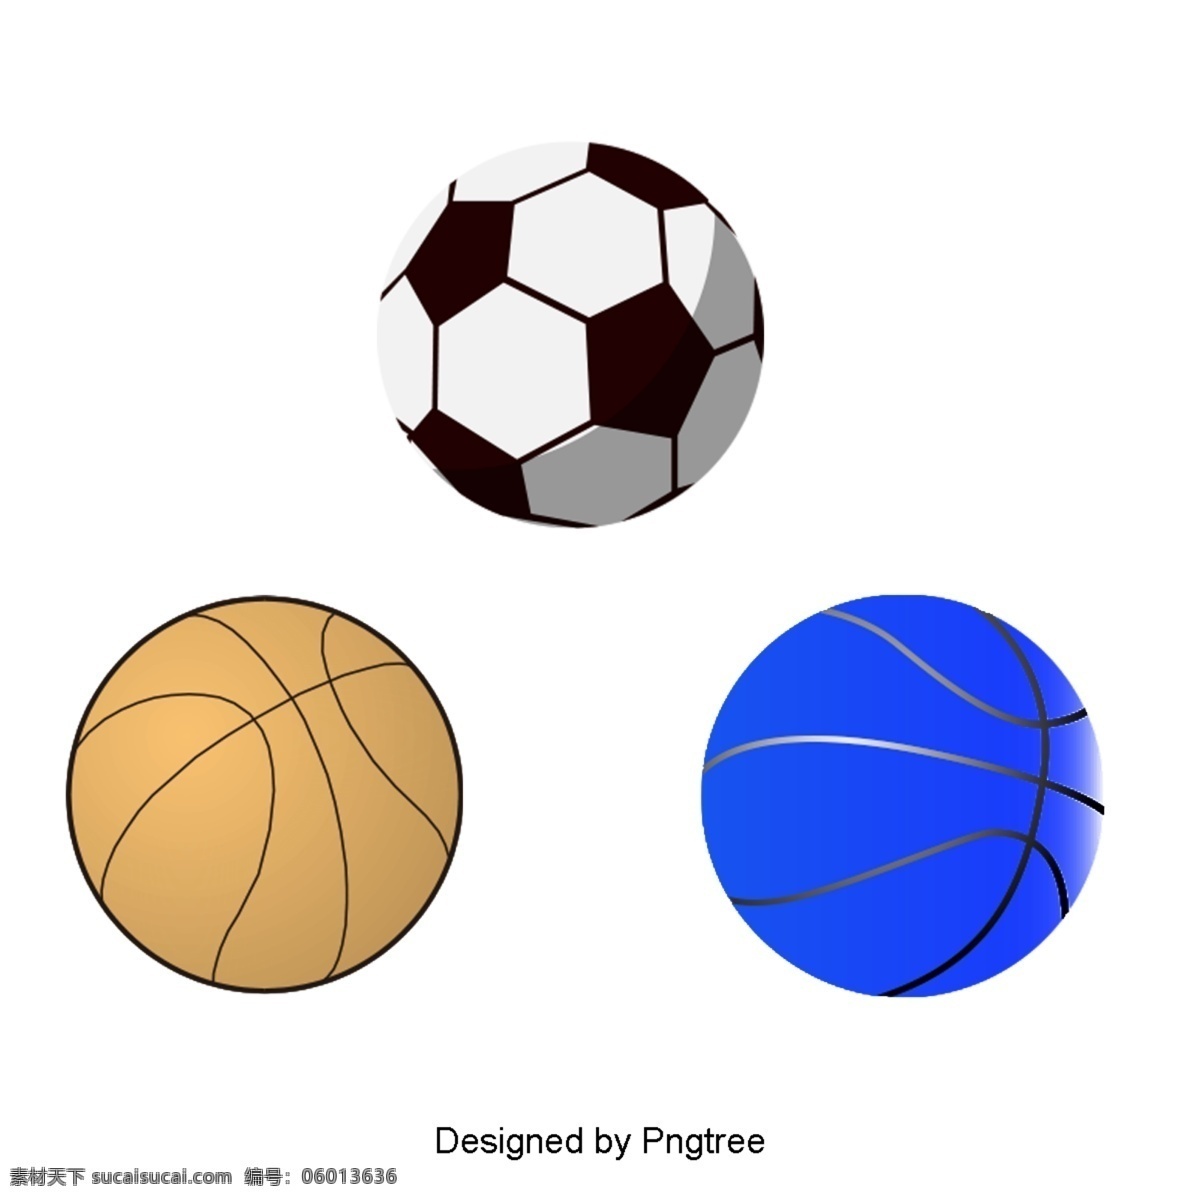 漂亮 的卡 通 手绘 平板 球运动 器材 美学 卡通 平面 球类 游戏 体育器材 足球 健身 体育运动